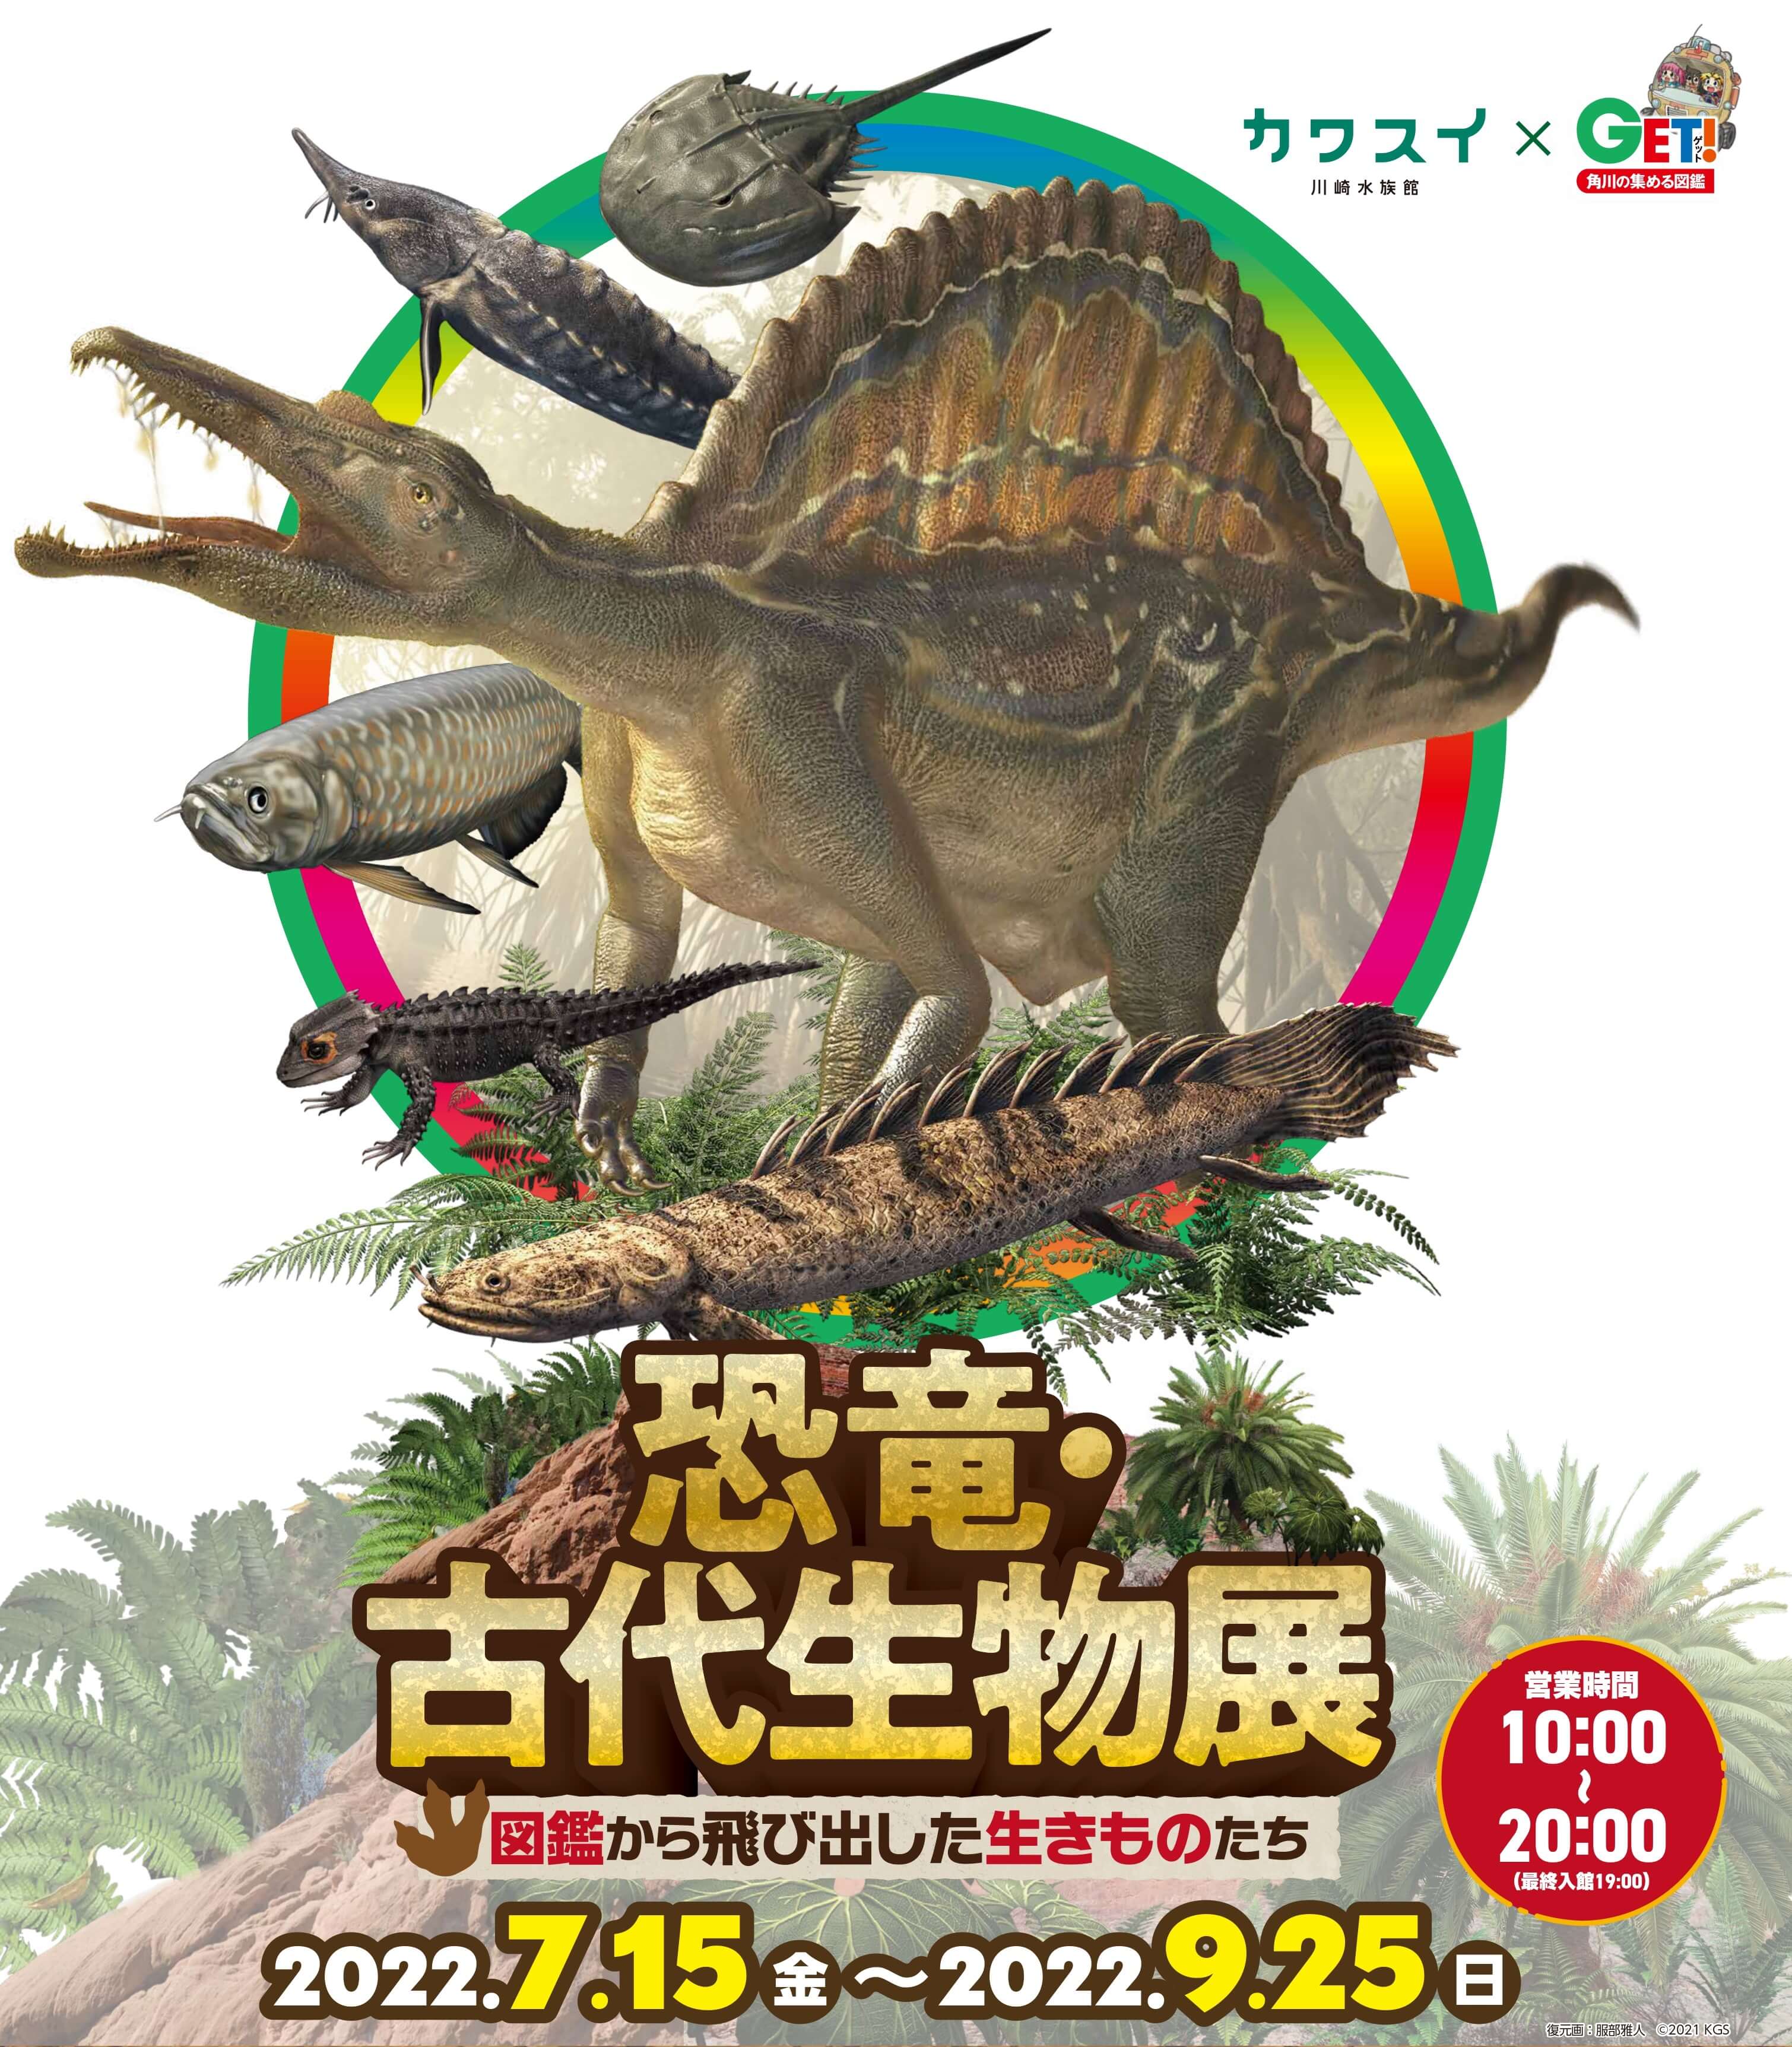 カワスイ 川崎水族館「恐竜・古代生物展～図鑑から飛び出した生きものたち～」